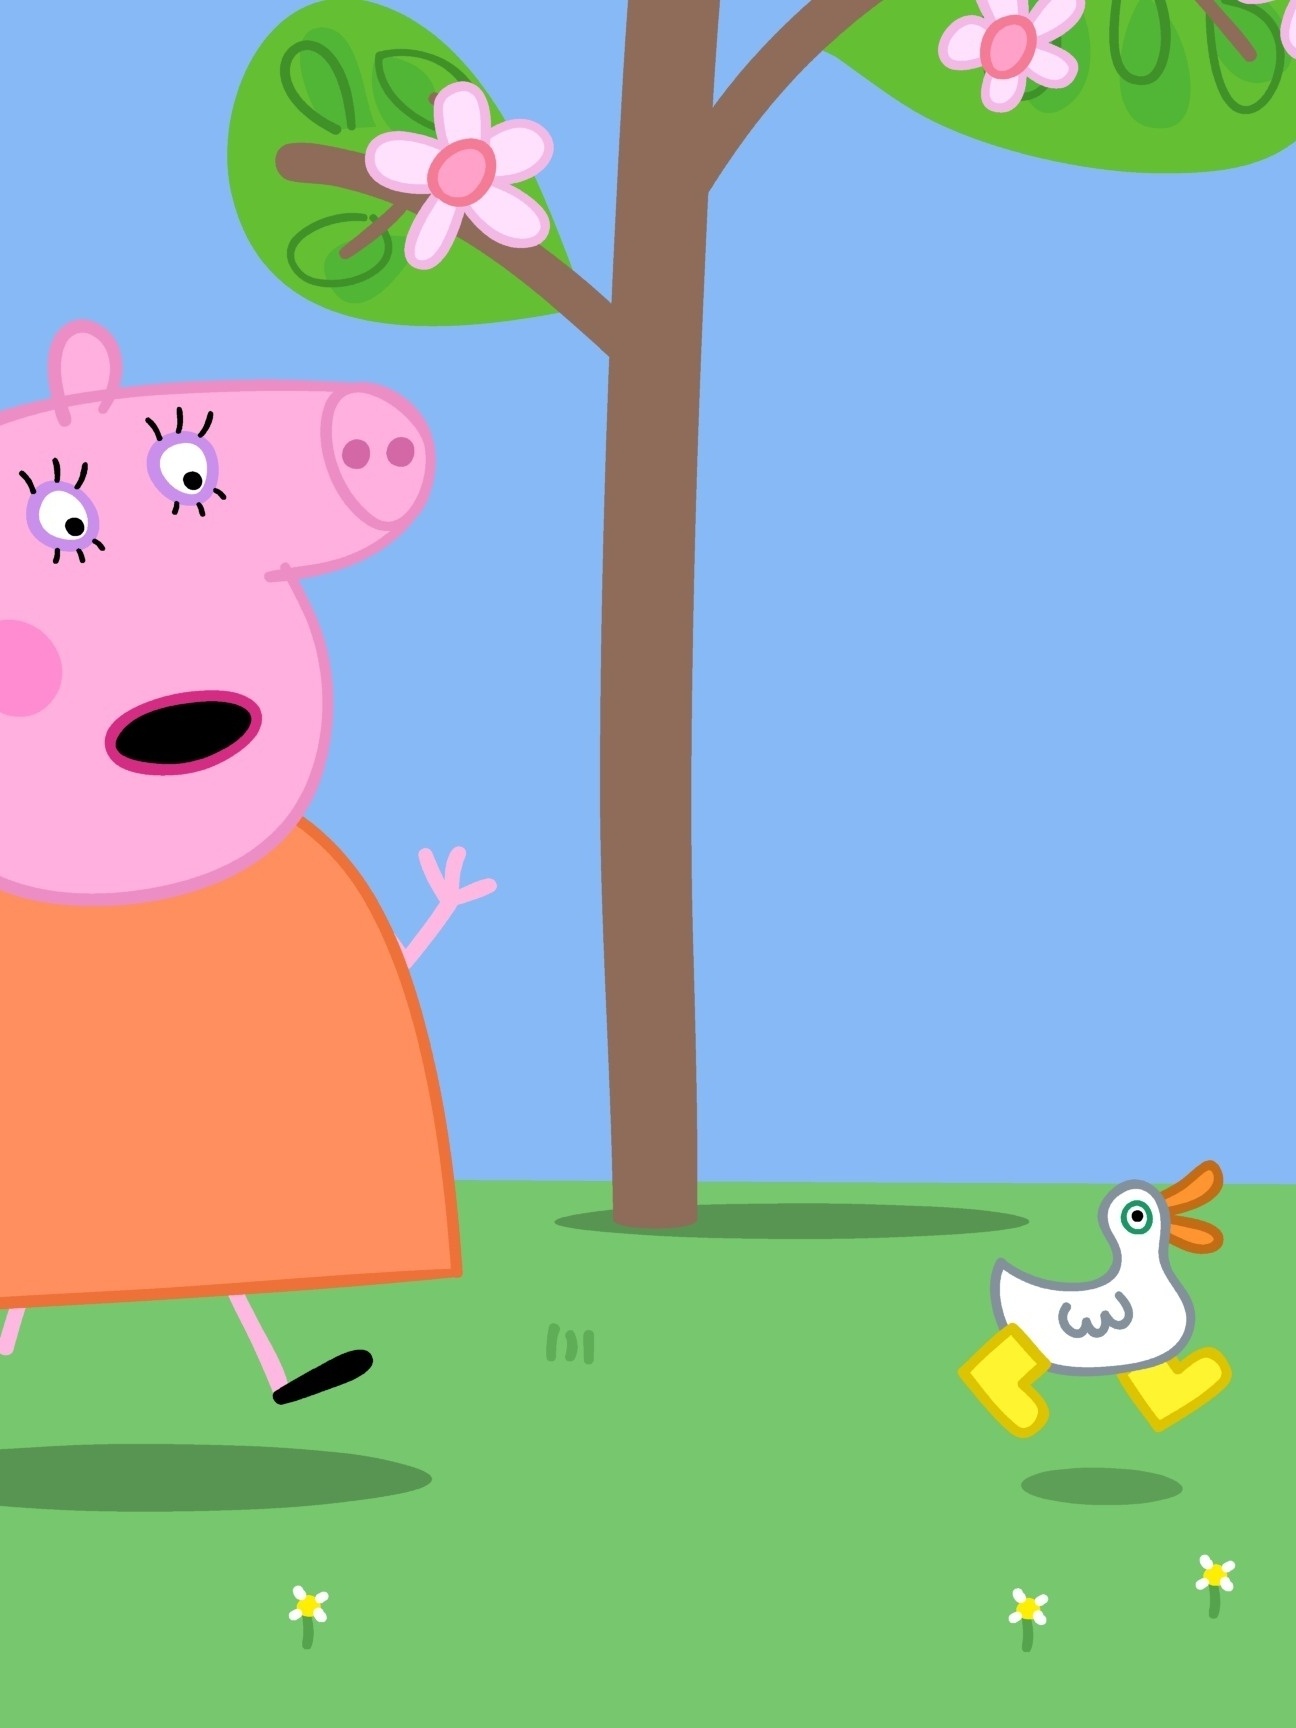 Sucesso mundial, desenho animado Peppa Pig estreia na TV Cultura